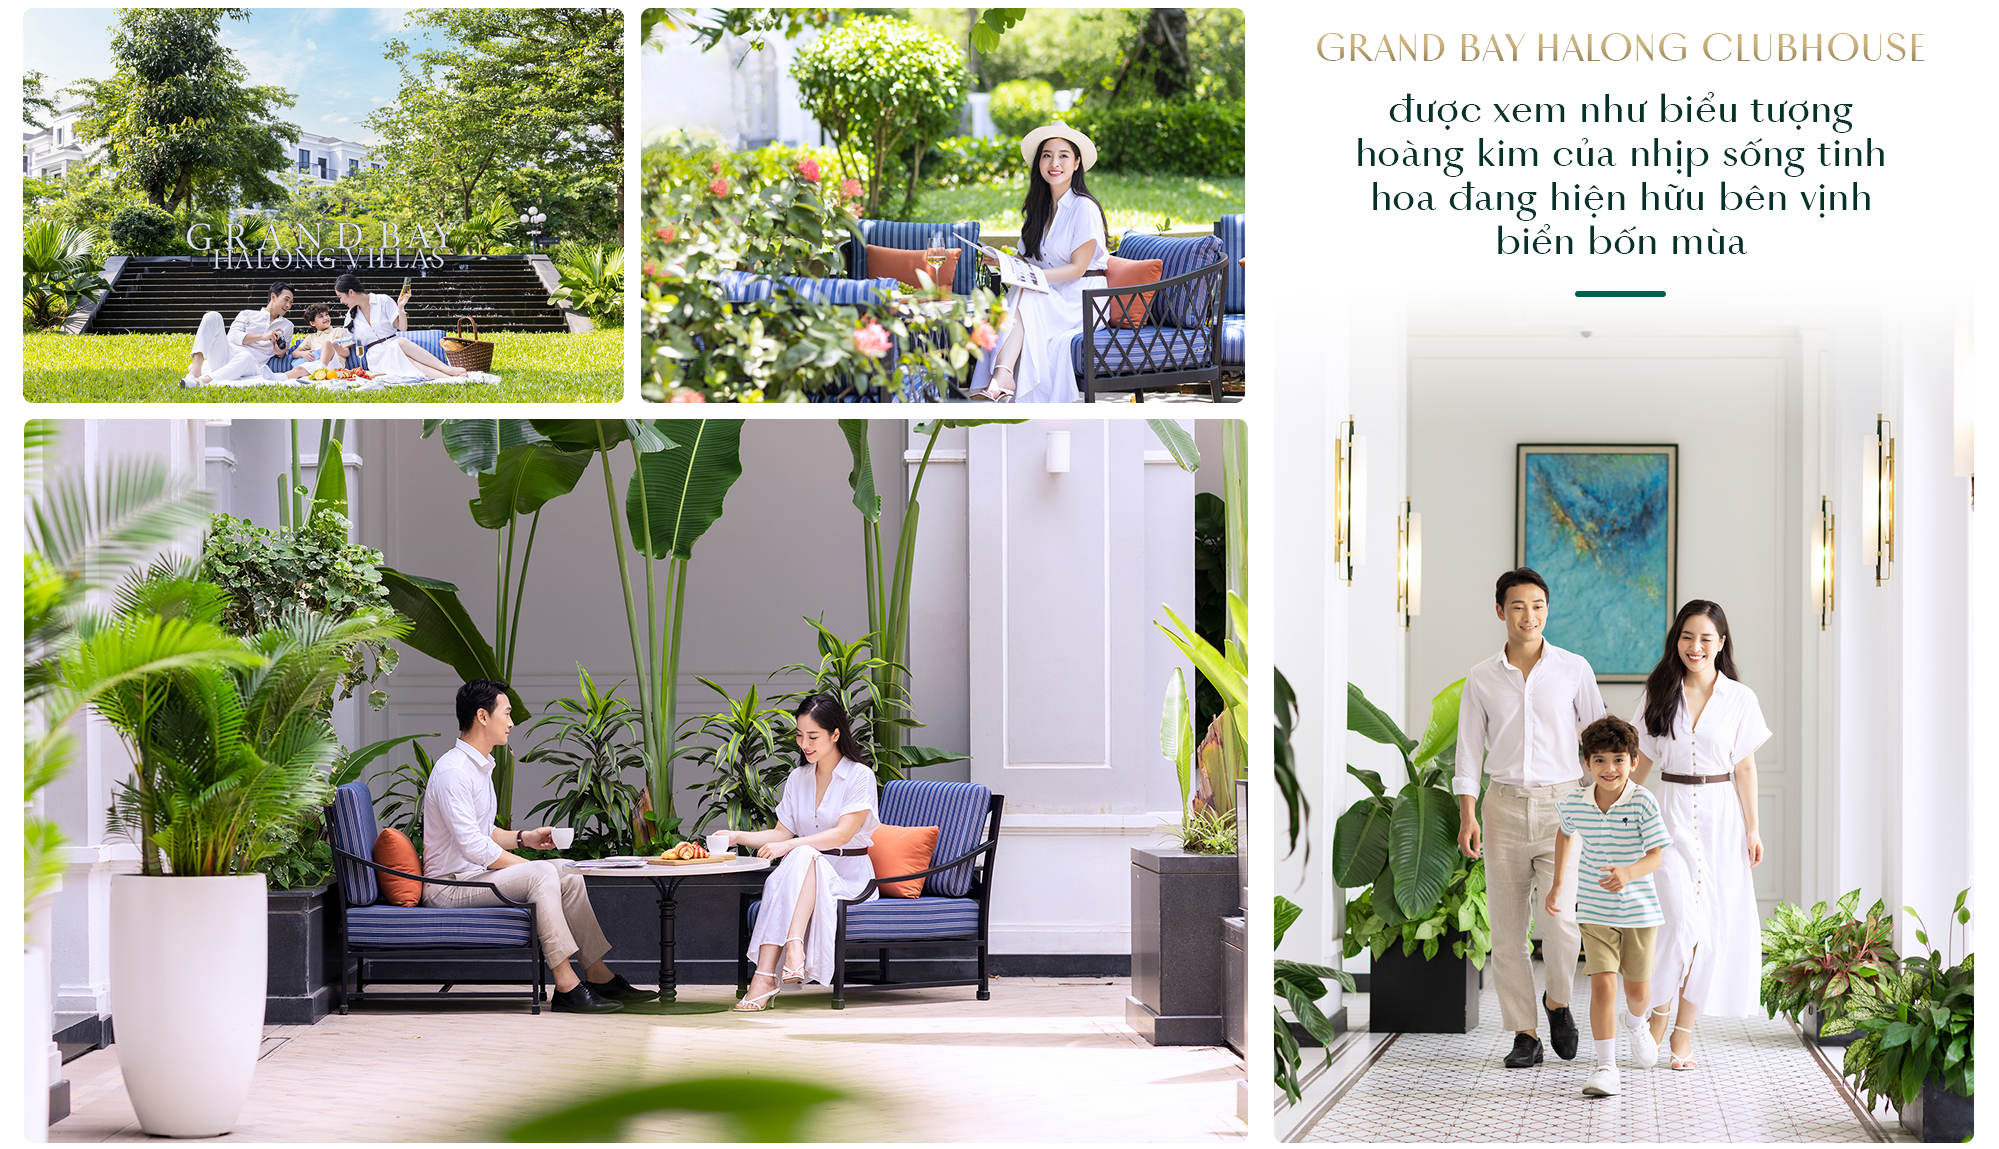 Grand Bay Halong Villas: Bến đỗ của phong cách sống Resort living sang trọng bên vịnh biển- Ảnh 5.